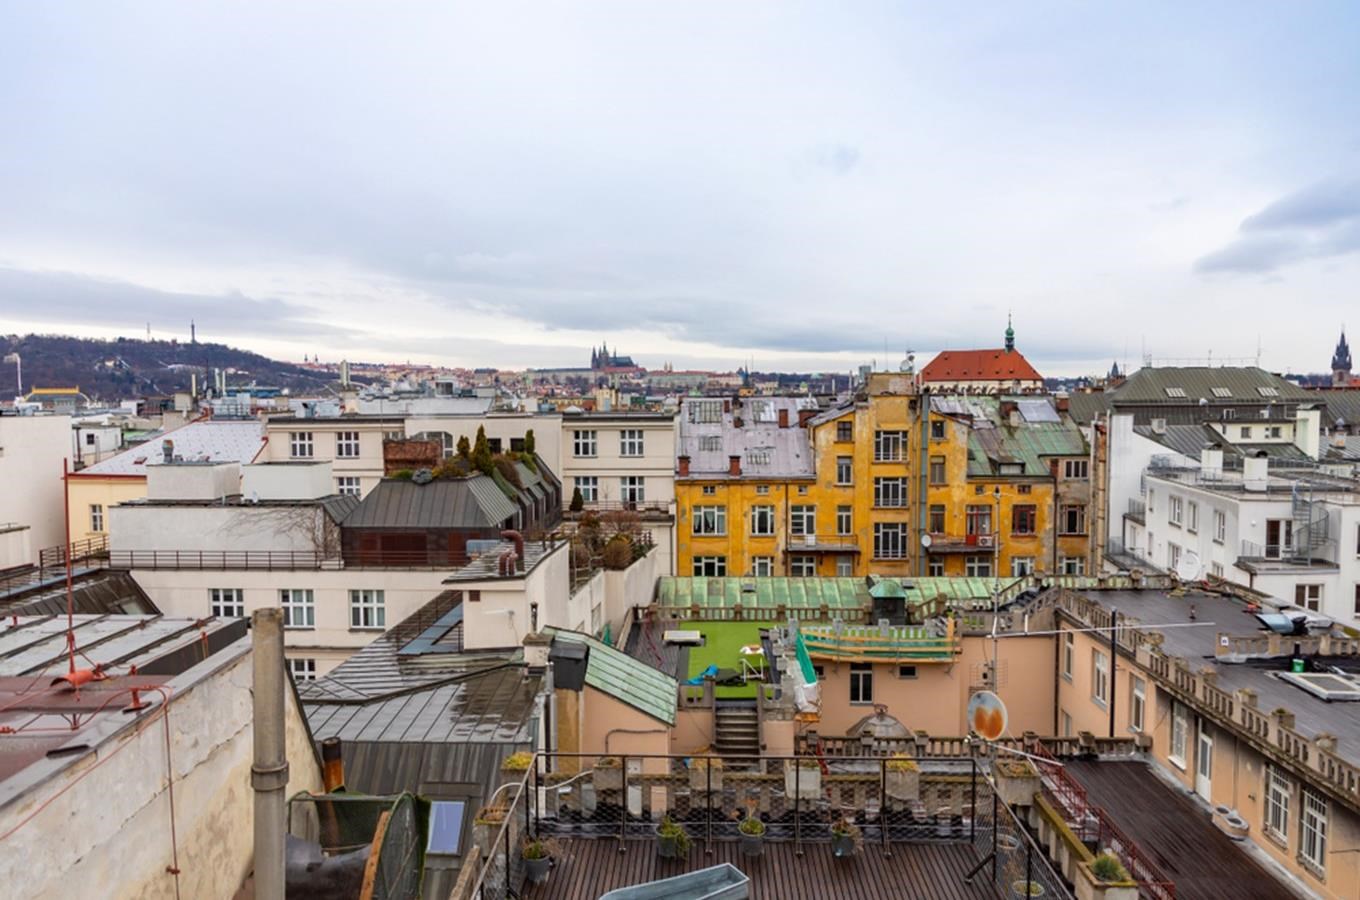 Kudy z nudy - Střecha Lucerny se otevírá pro veřejnost